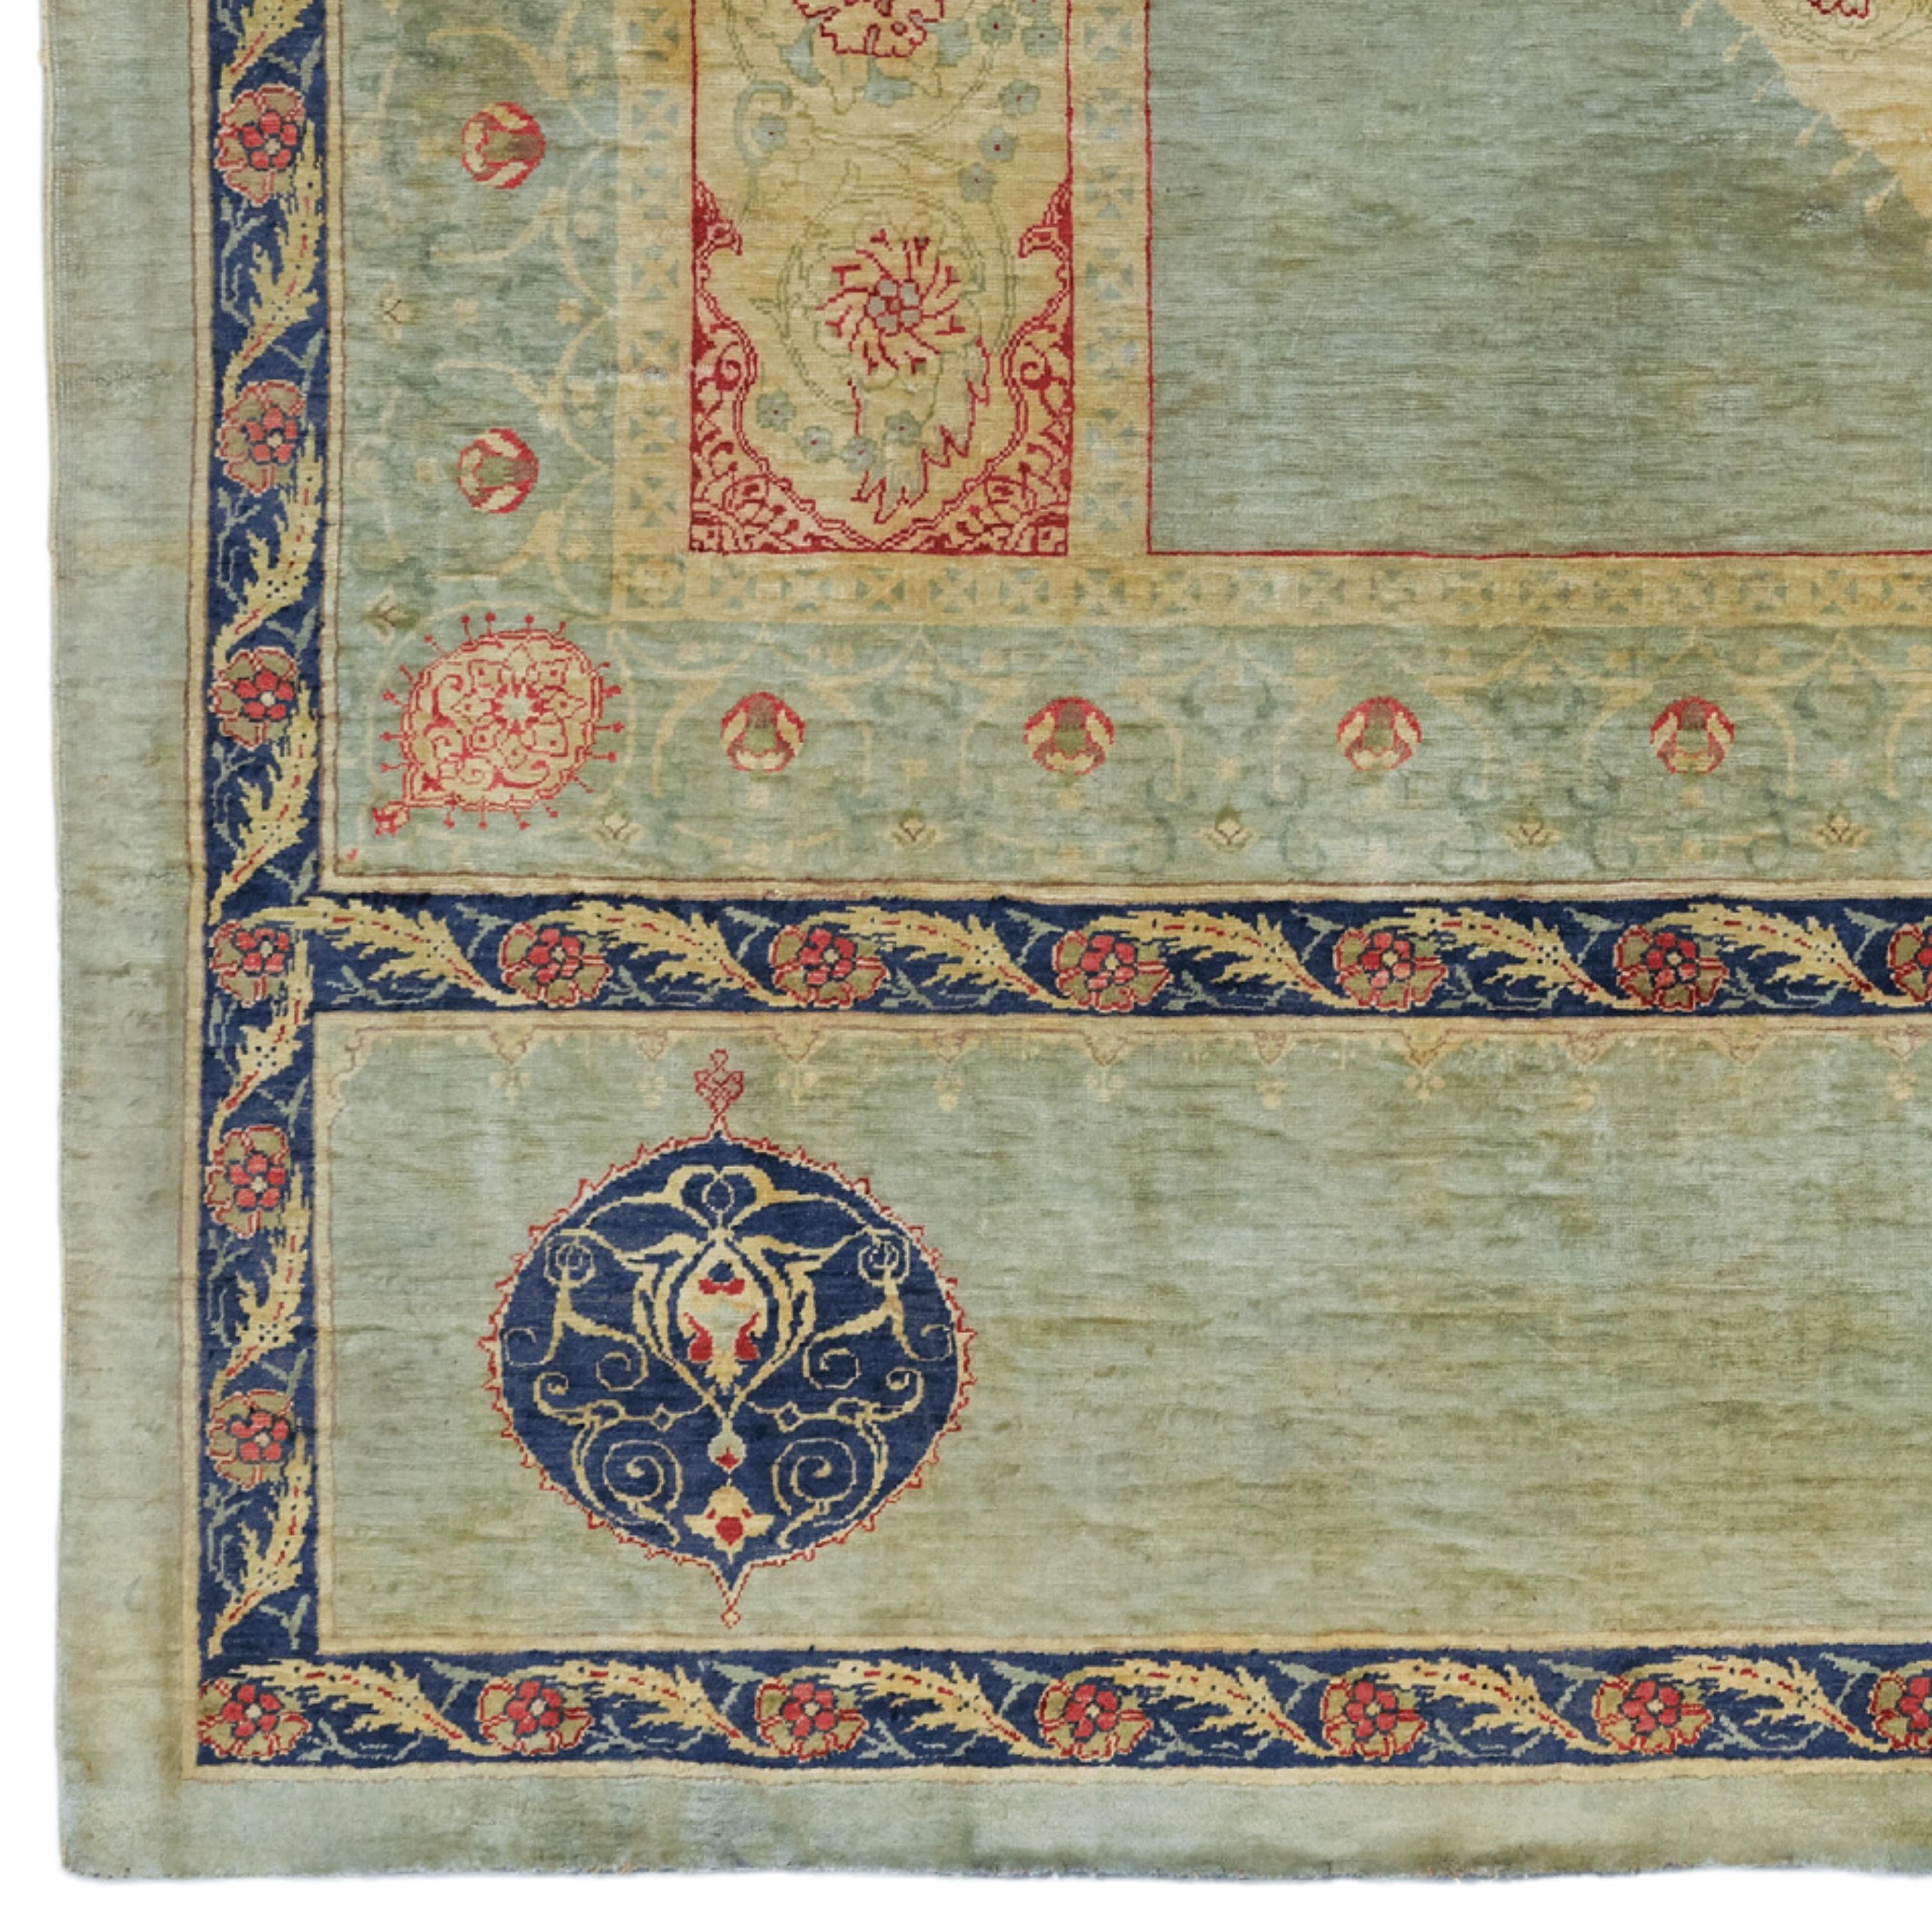 Fin du 19e siècle Tapis en soie Feshane à motifs de Coran et de Qab

Les tapis Feshane trouvent leur origine dans la célèbre usine Feshane, située à Istanbul, connue pour ses tapis exquis à l'époque ottomane. Fondée en 1841 sous le règne du sultan